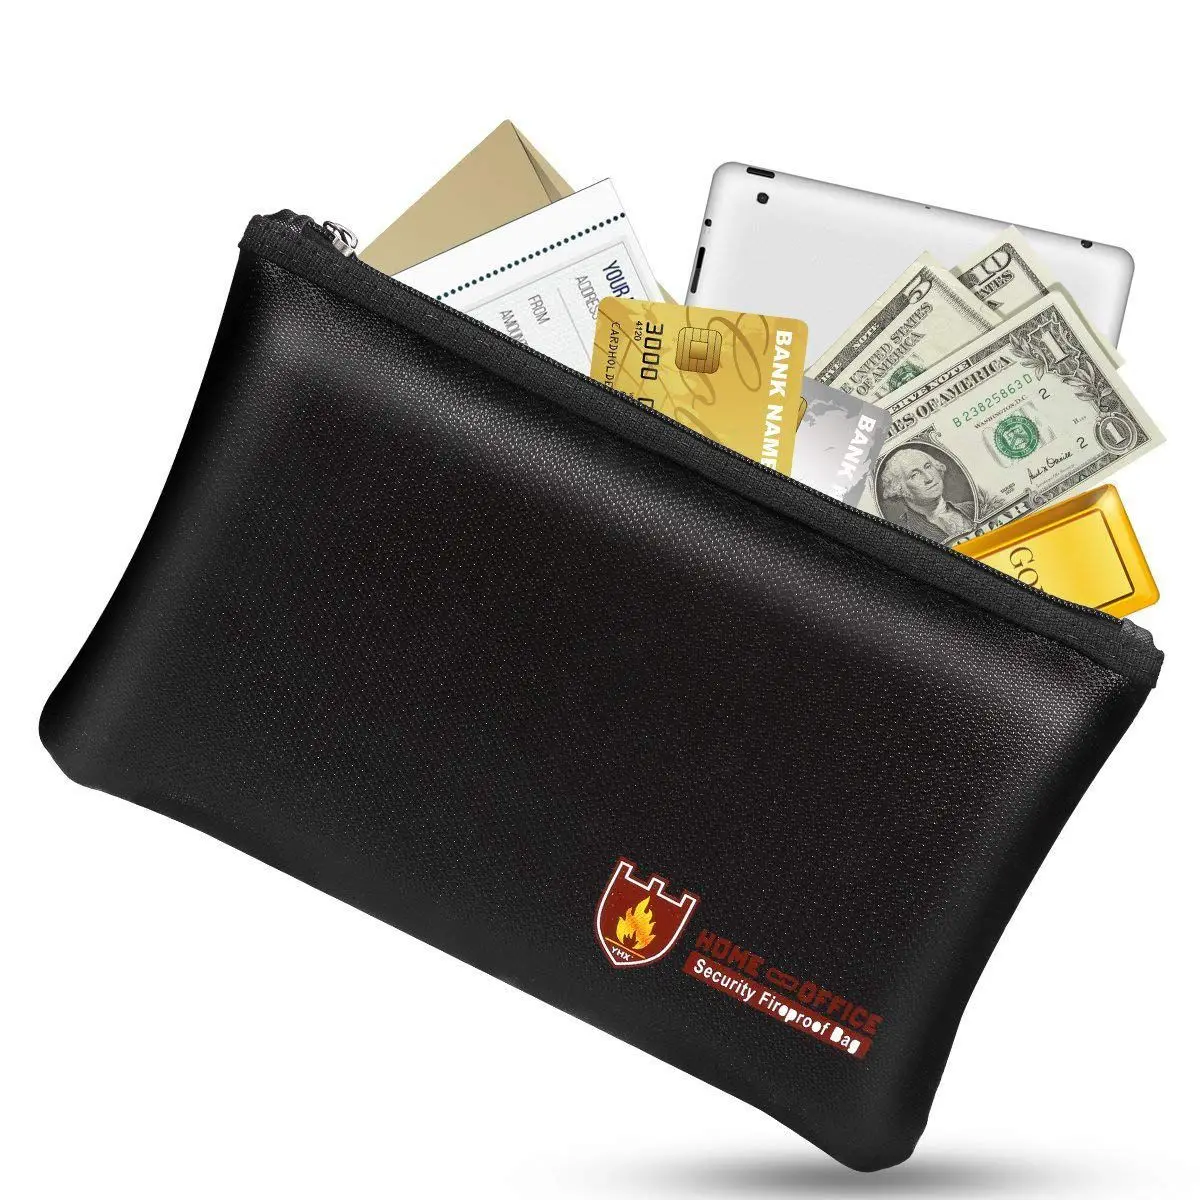 Огнестойкие сумки для документов, водостойкие и огнестойкая сумка с огнестойкой молнией для iPad, денег, ювелирных изделий, паспорта